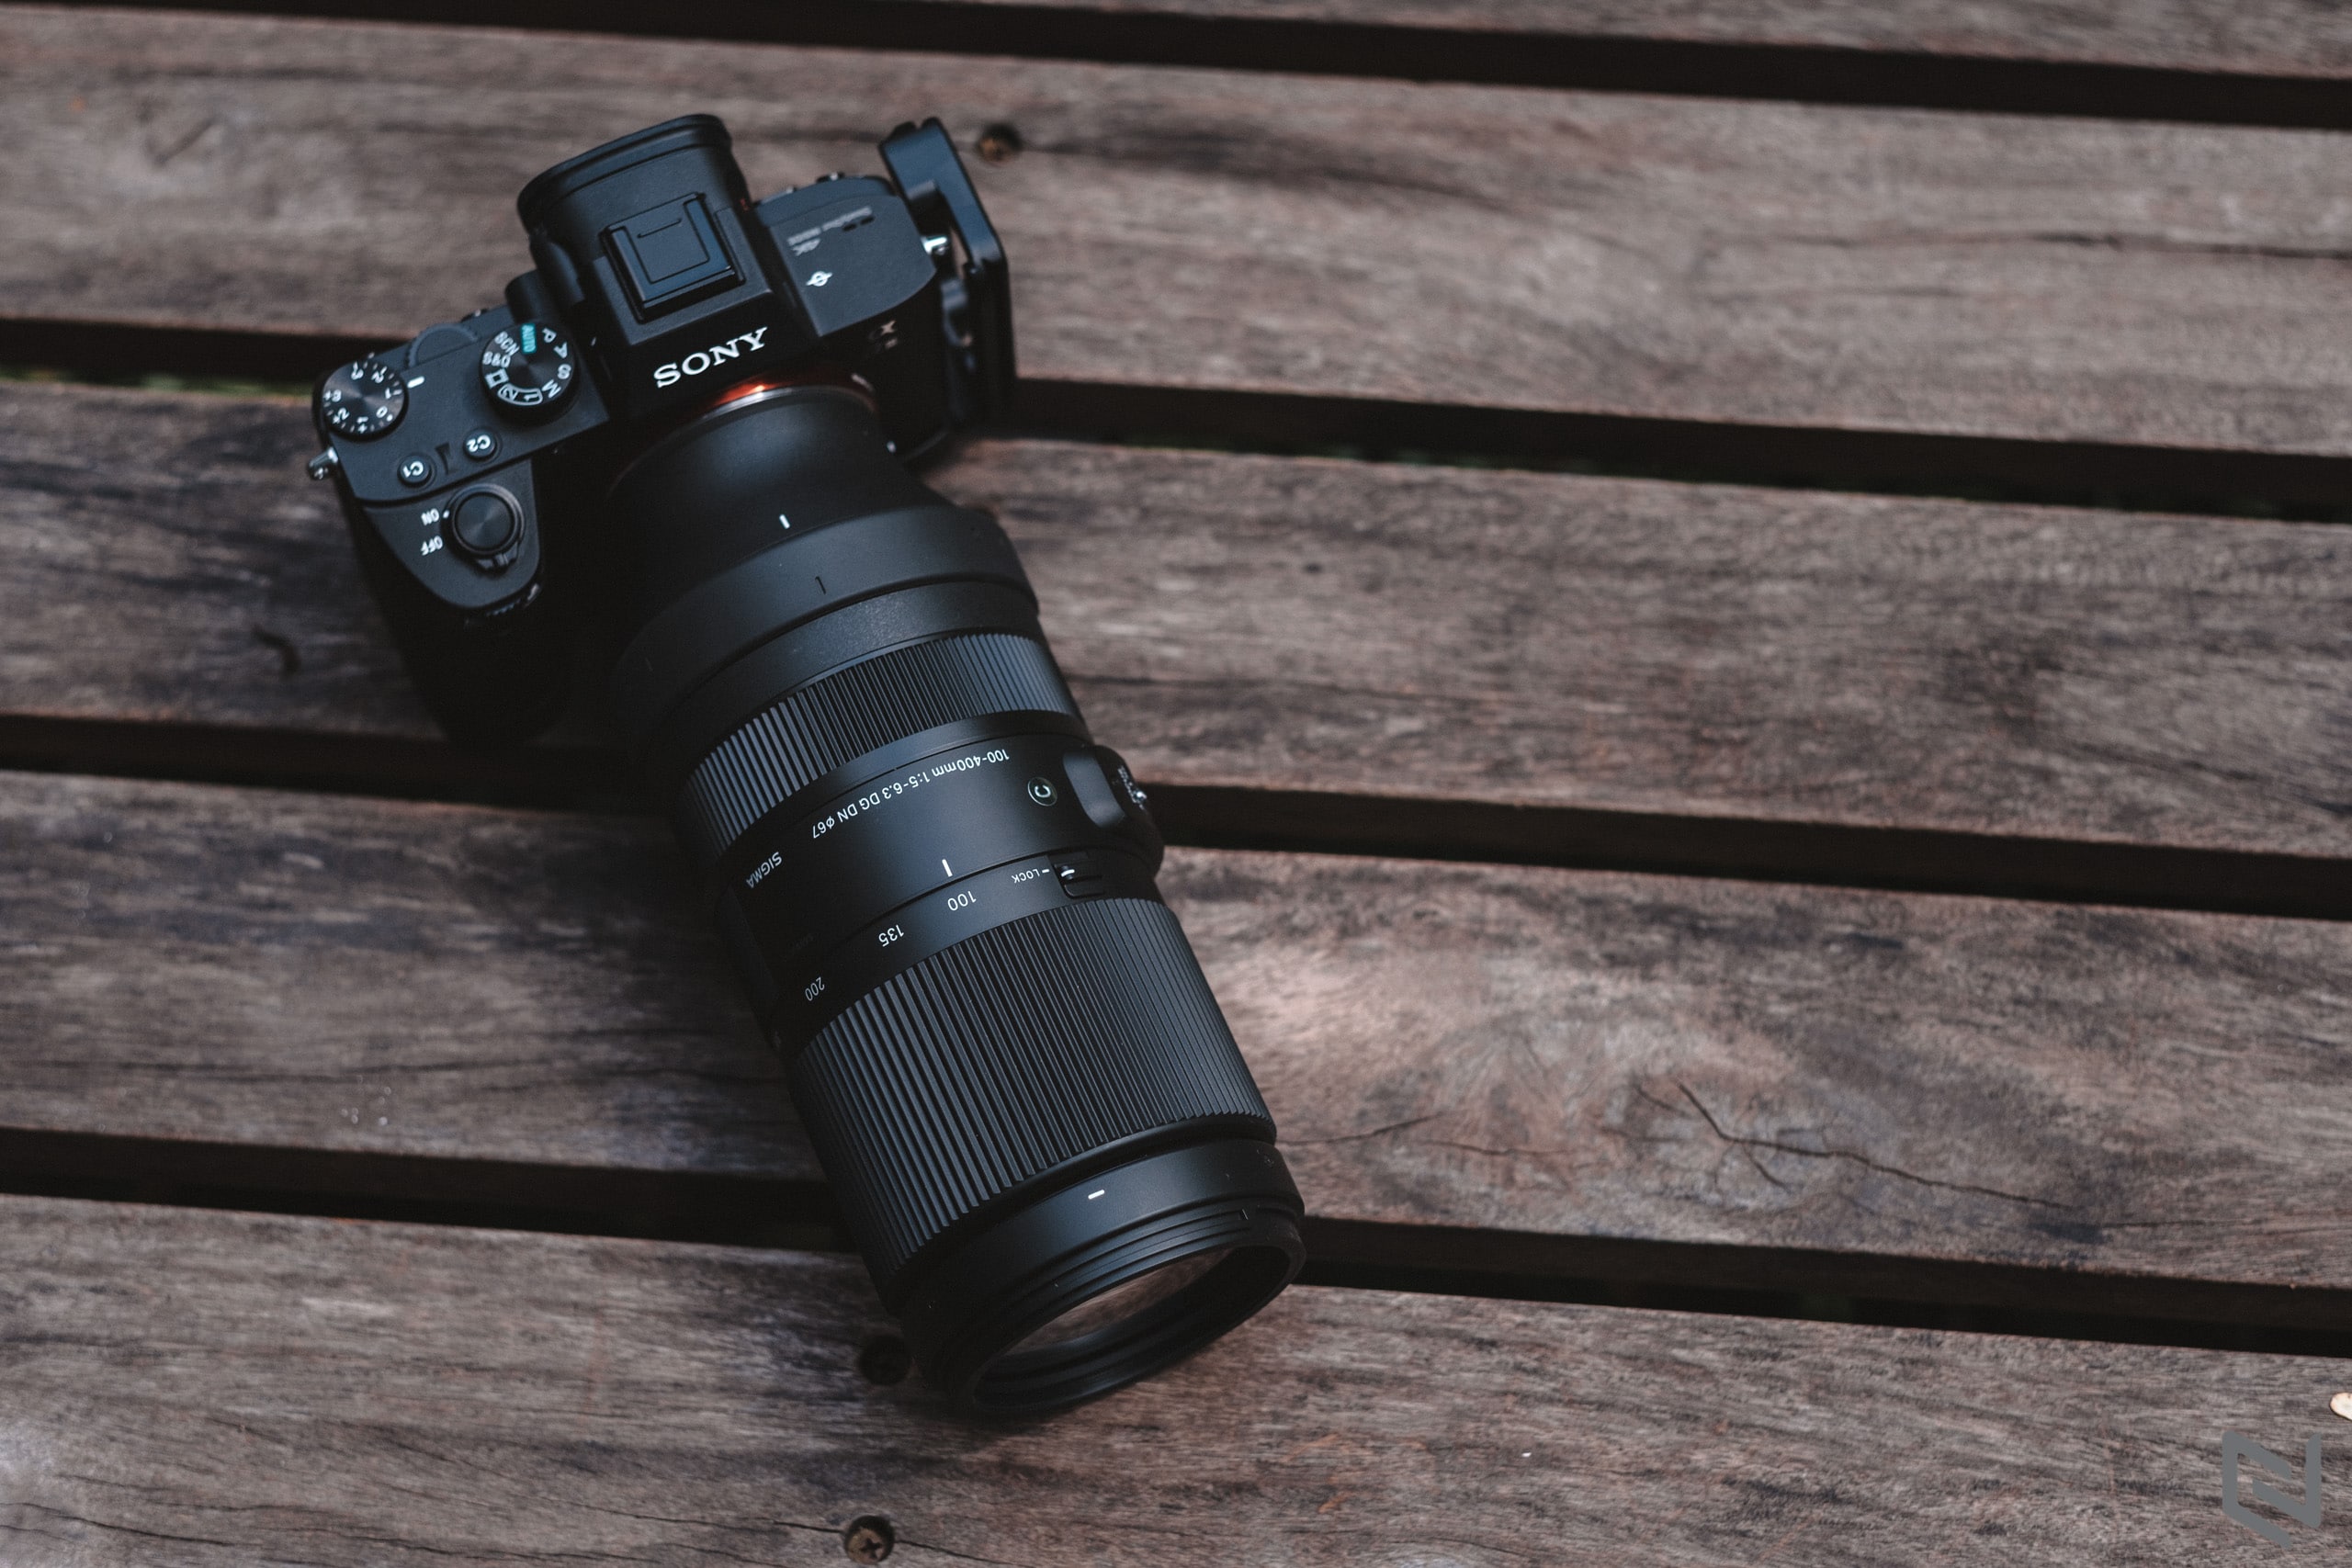 Trên tay ống kính Sigma 100-400mm F5-6.3 DG DN OS cho Sony, lựa chọn ống kính siêu zoom giá mềm